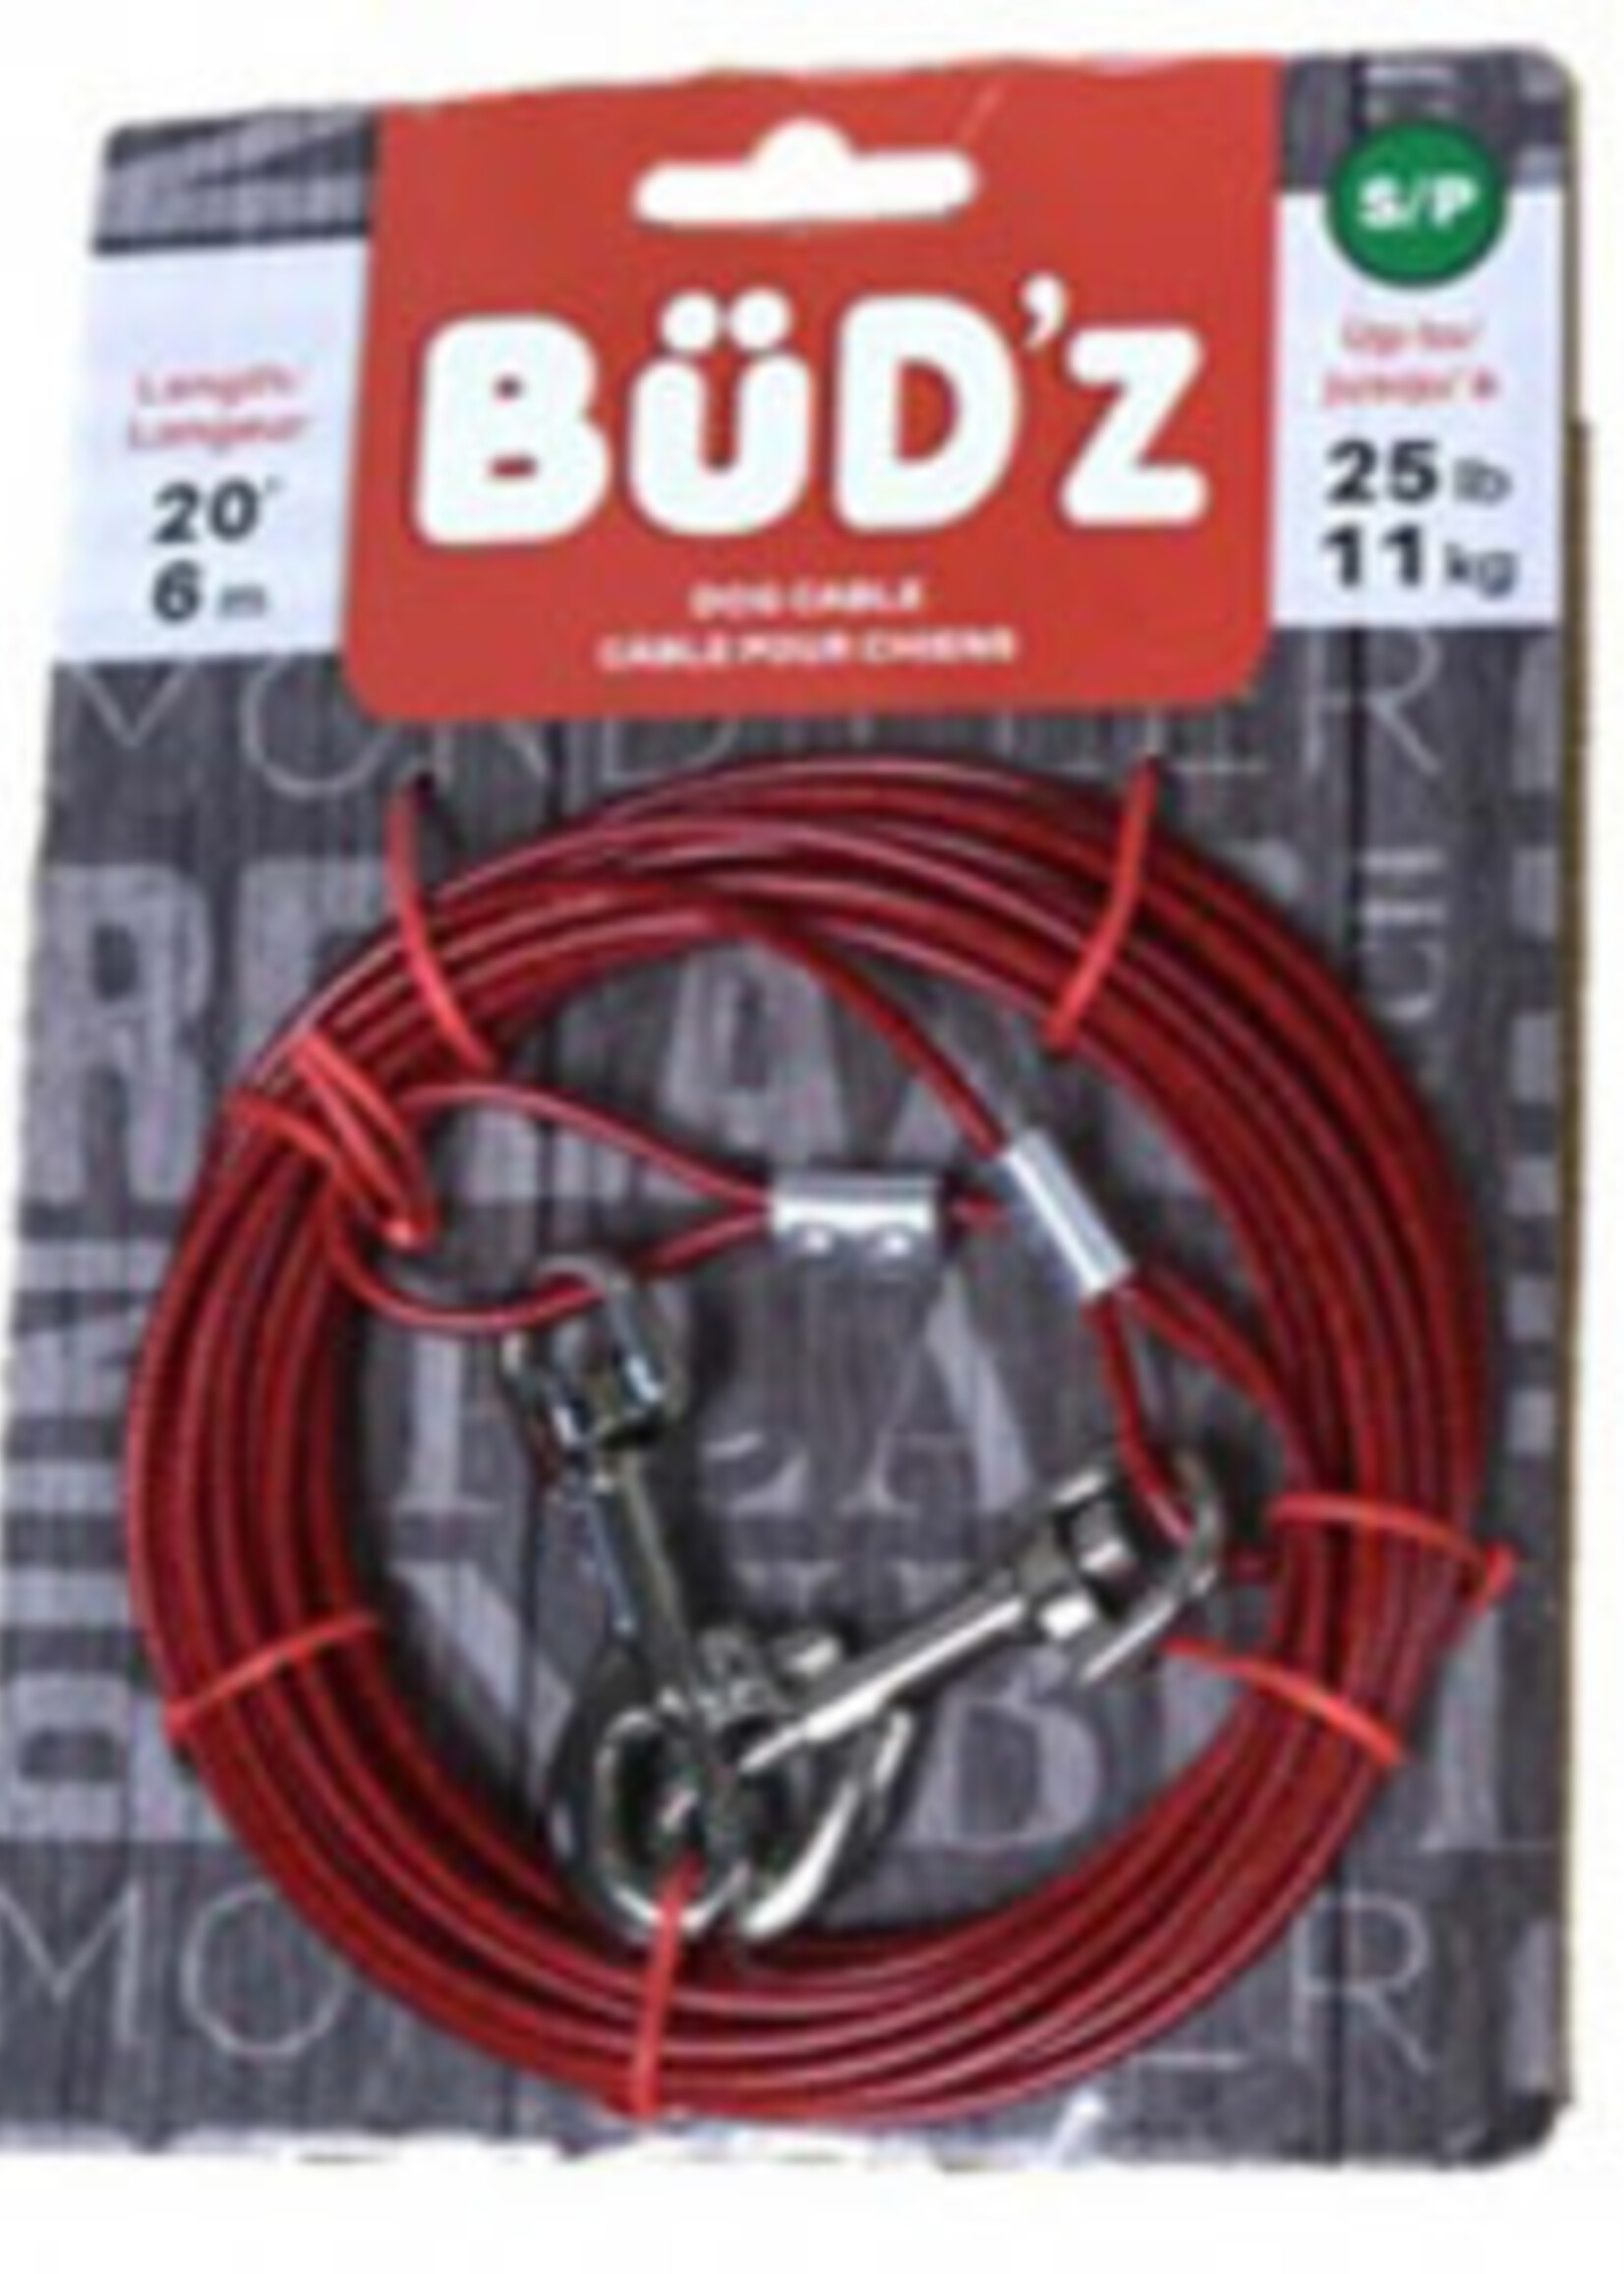 Budz BUDZ 20' Tie Out - up to 25lbs